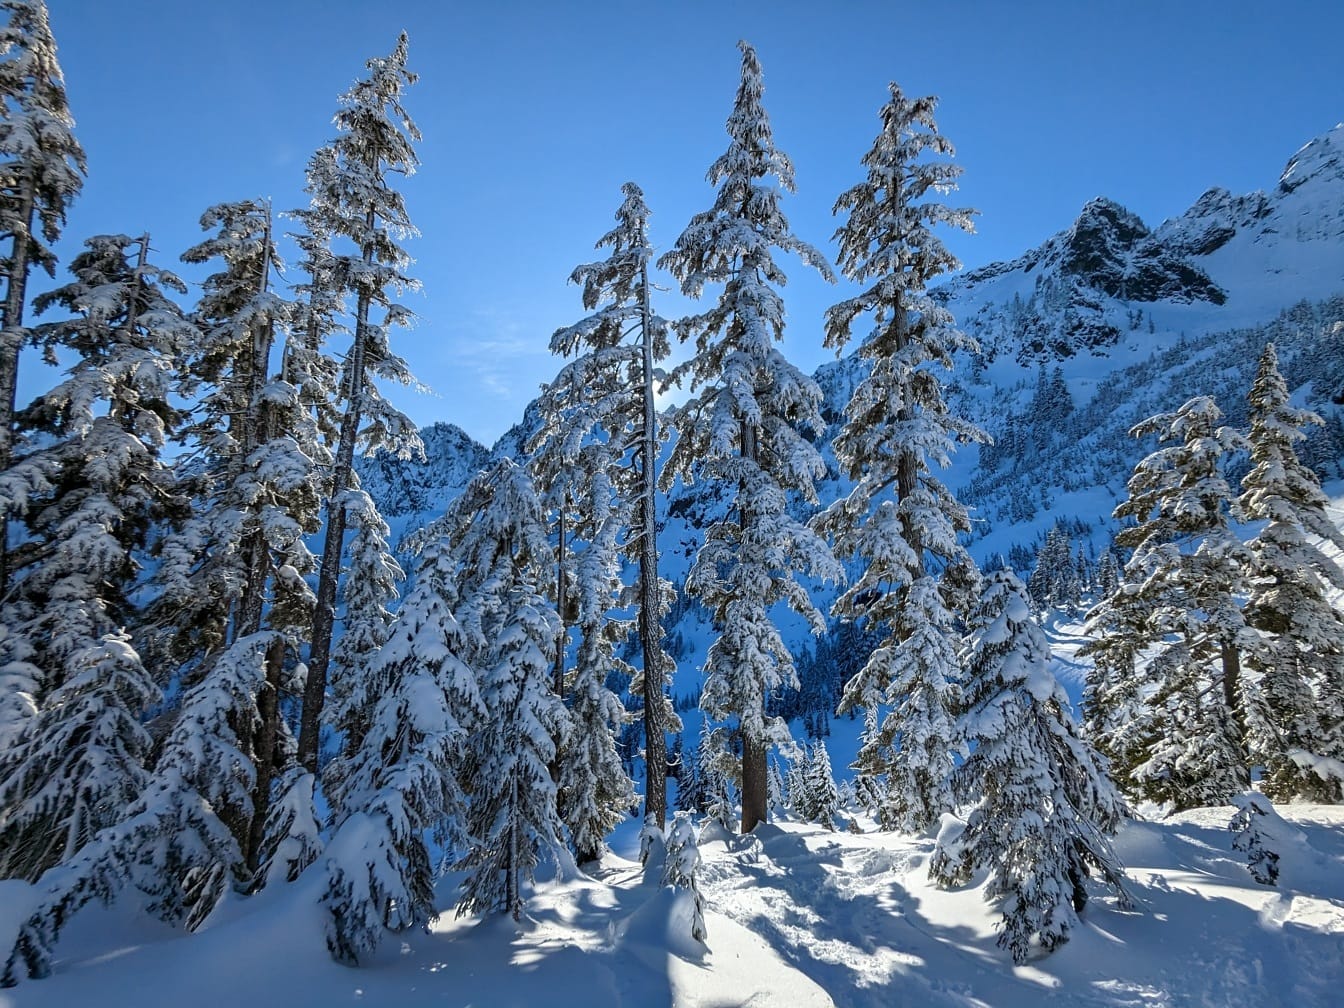 Musim dingin yang cerah dengan pohon konifer bersalju